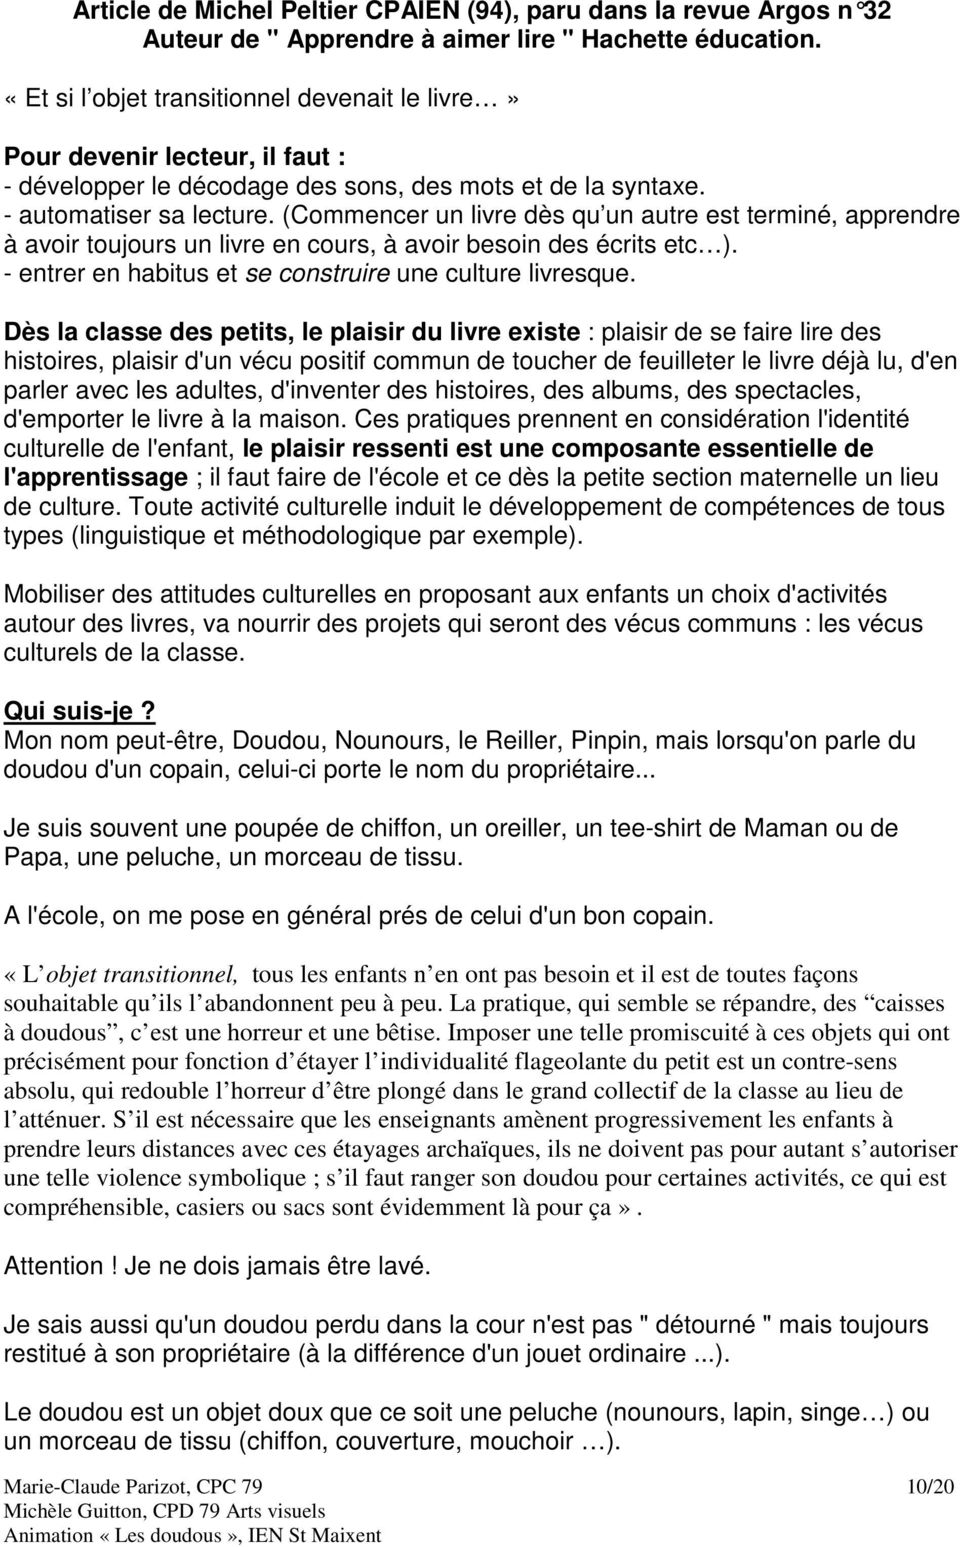 Les Doudous Sommaire Presentation Quelques Pistes Michel Peltier Cpaien P 1 Les Albums De L Abc R Descriptif Et Exploitation Pdf Free Download